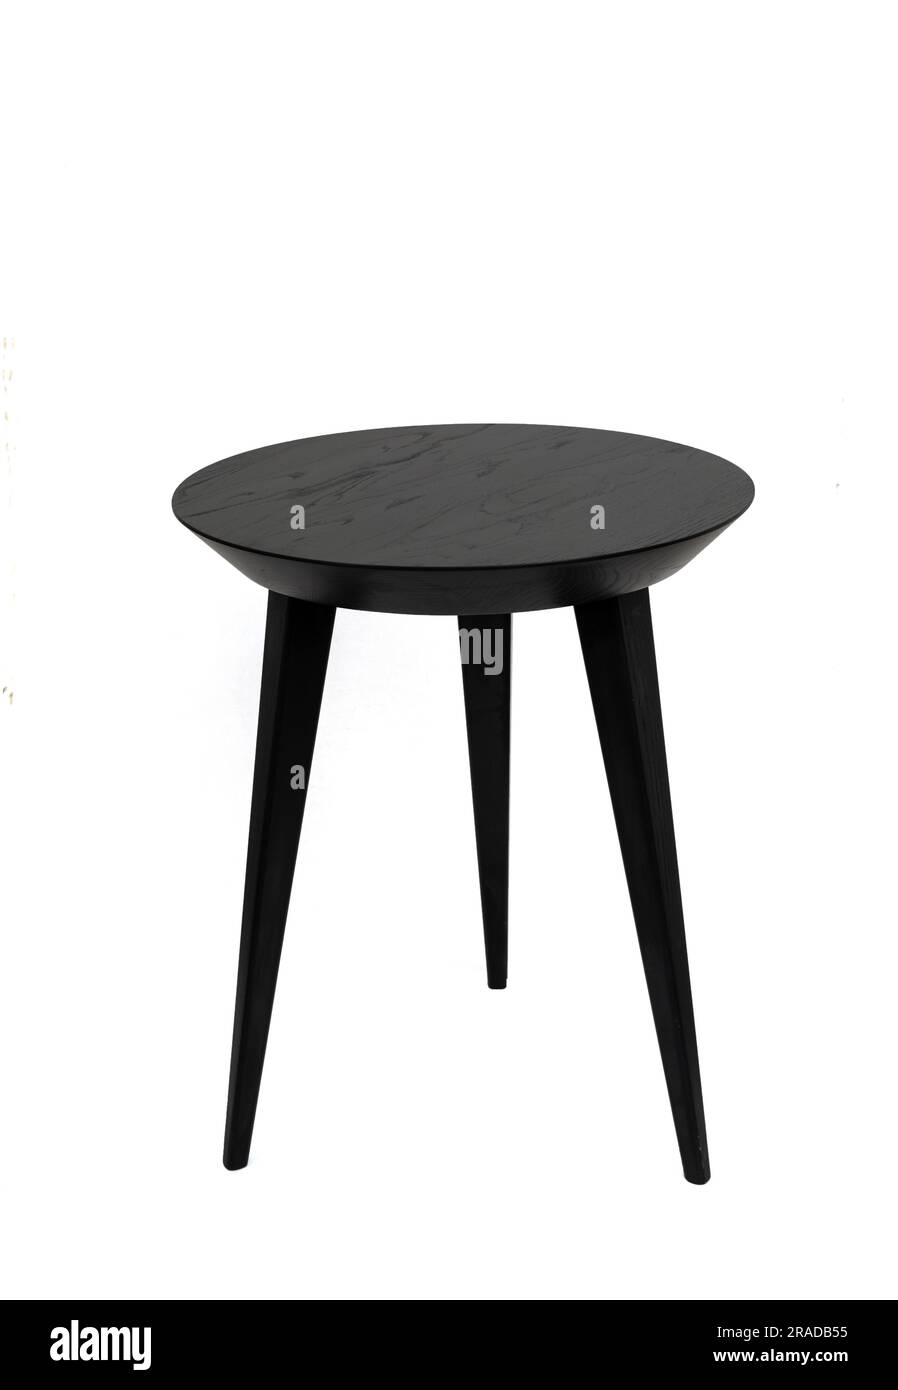 Table basse ronde en bois noir sur trois pieds avec une belle texture de bois. Isolé sur fond blanc Banque D'Images